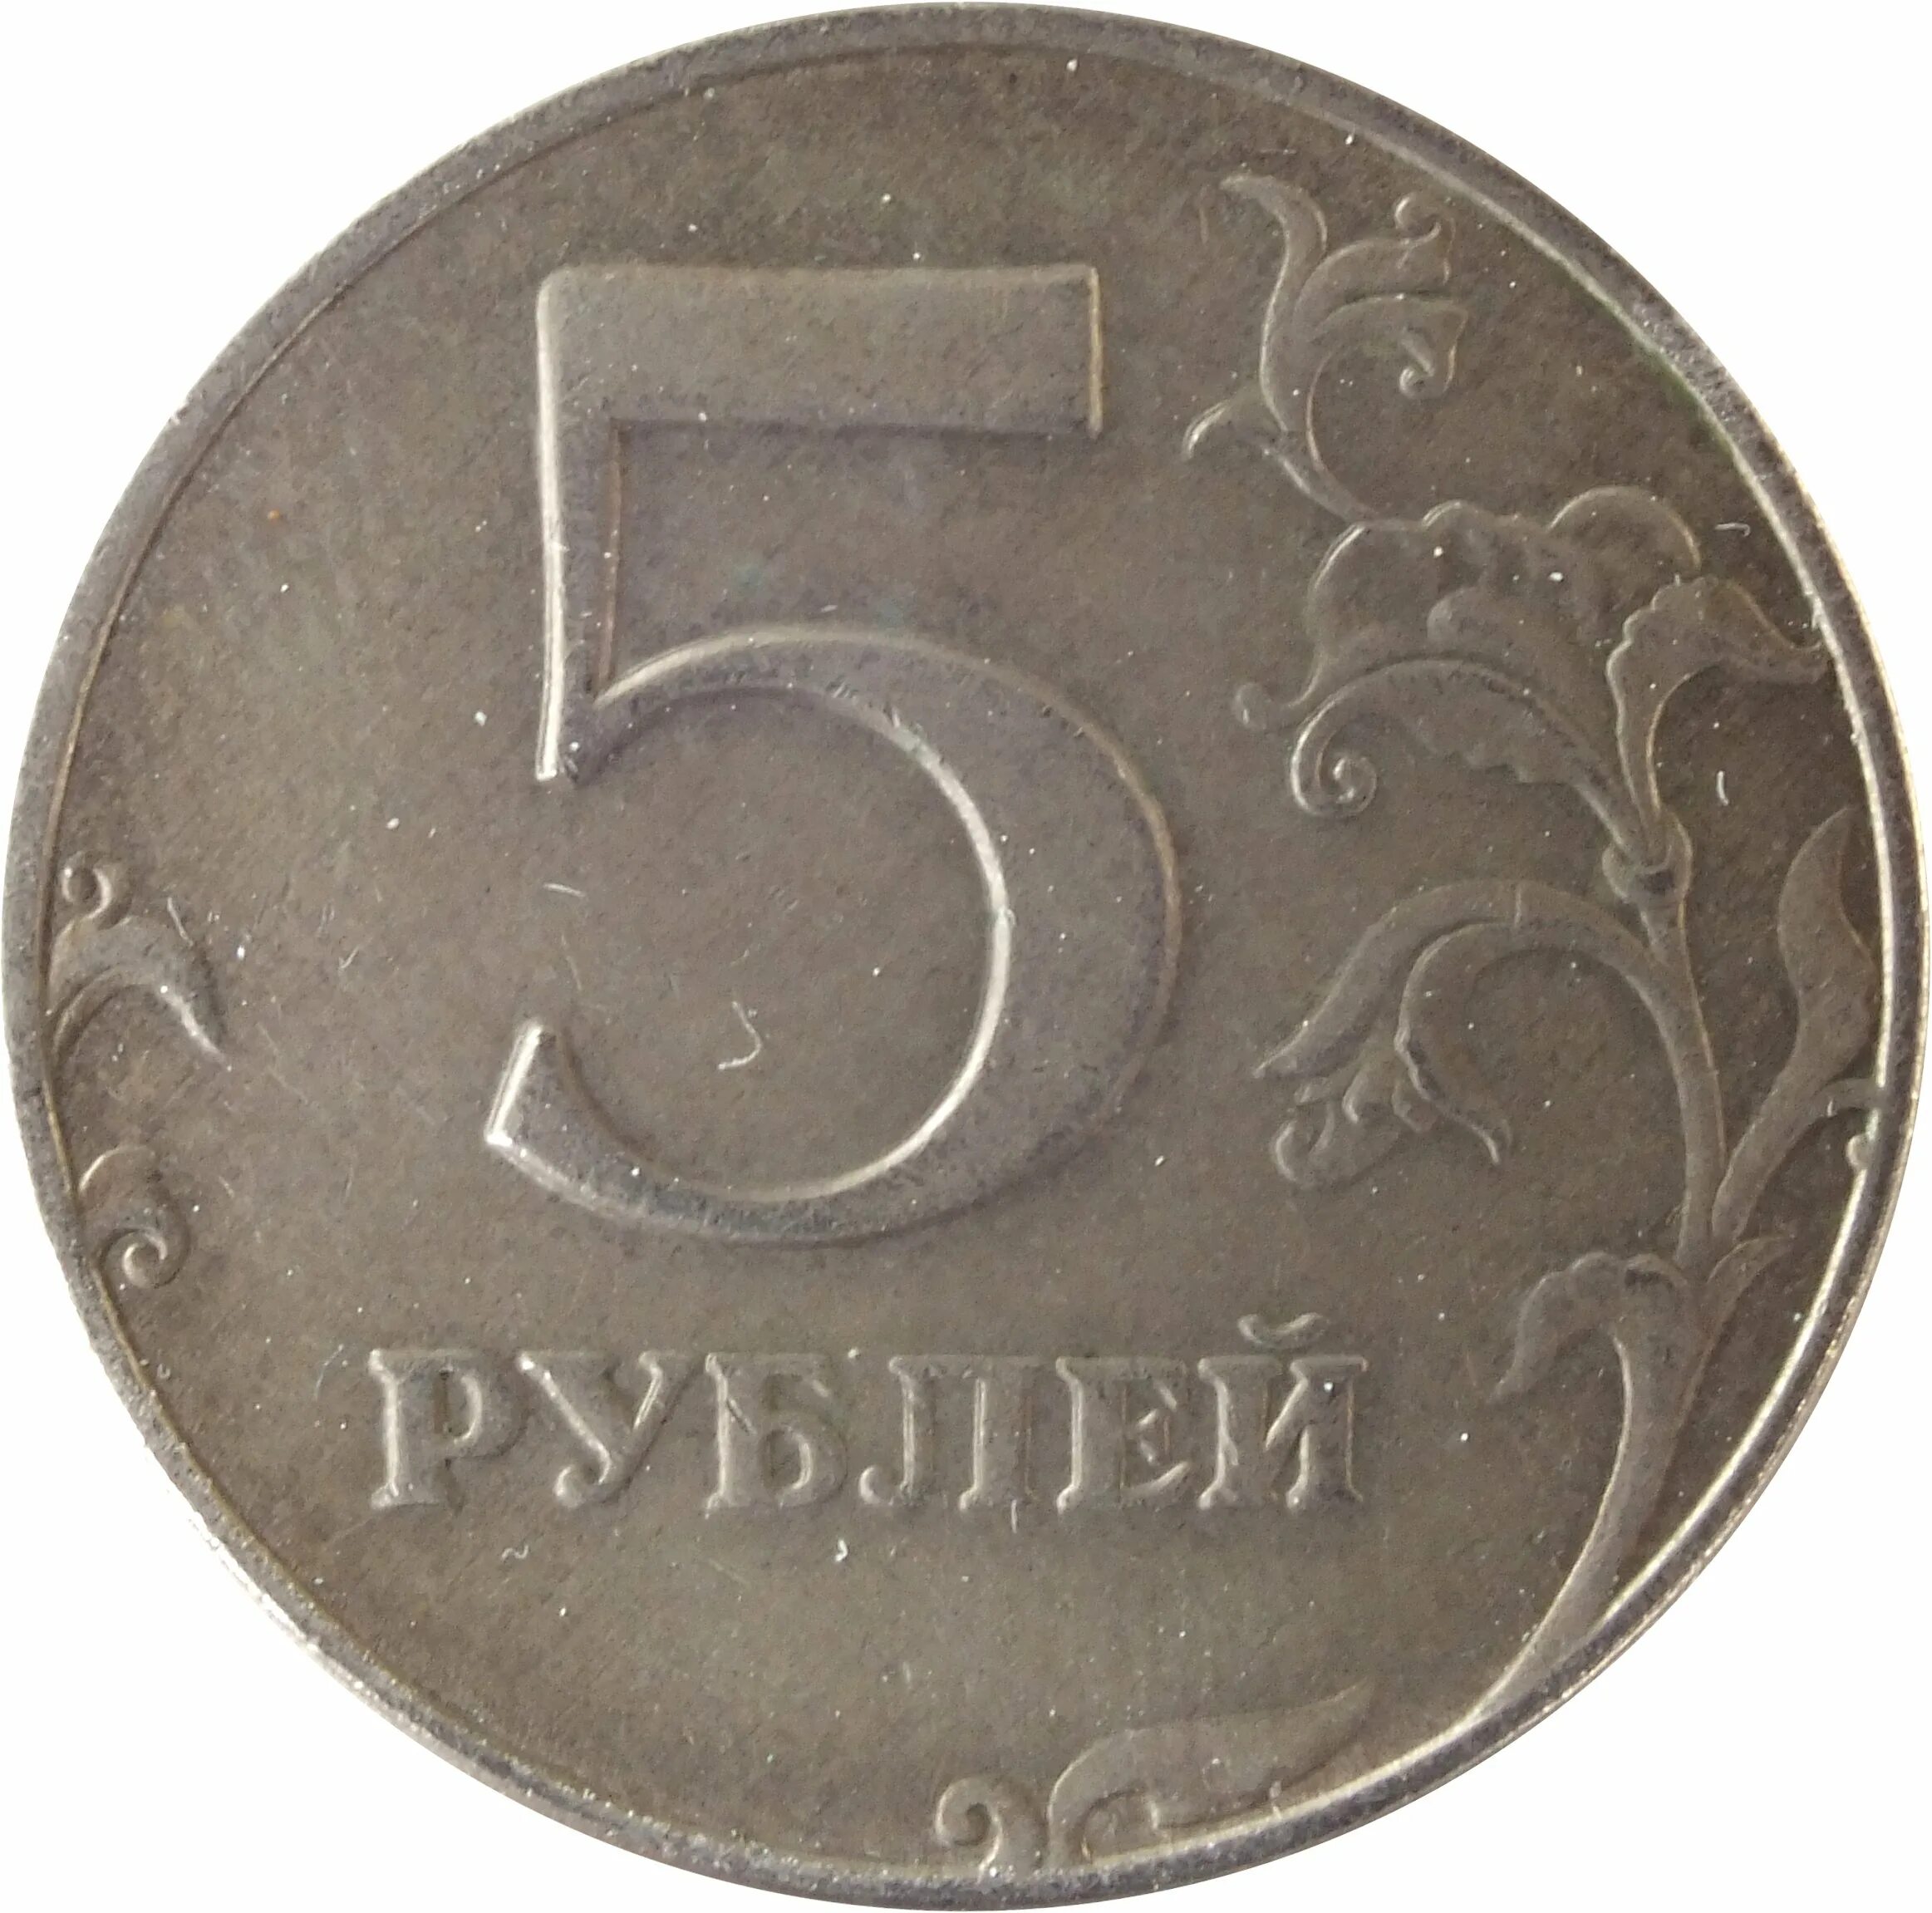 5 рублей орел. Монета 5 рублей. Монета 5 рублей реверс. Монета "5 рублей 1907 года". Монета 5 рублей без фона.